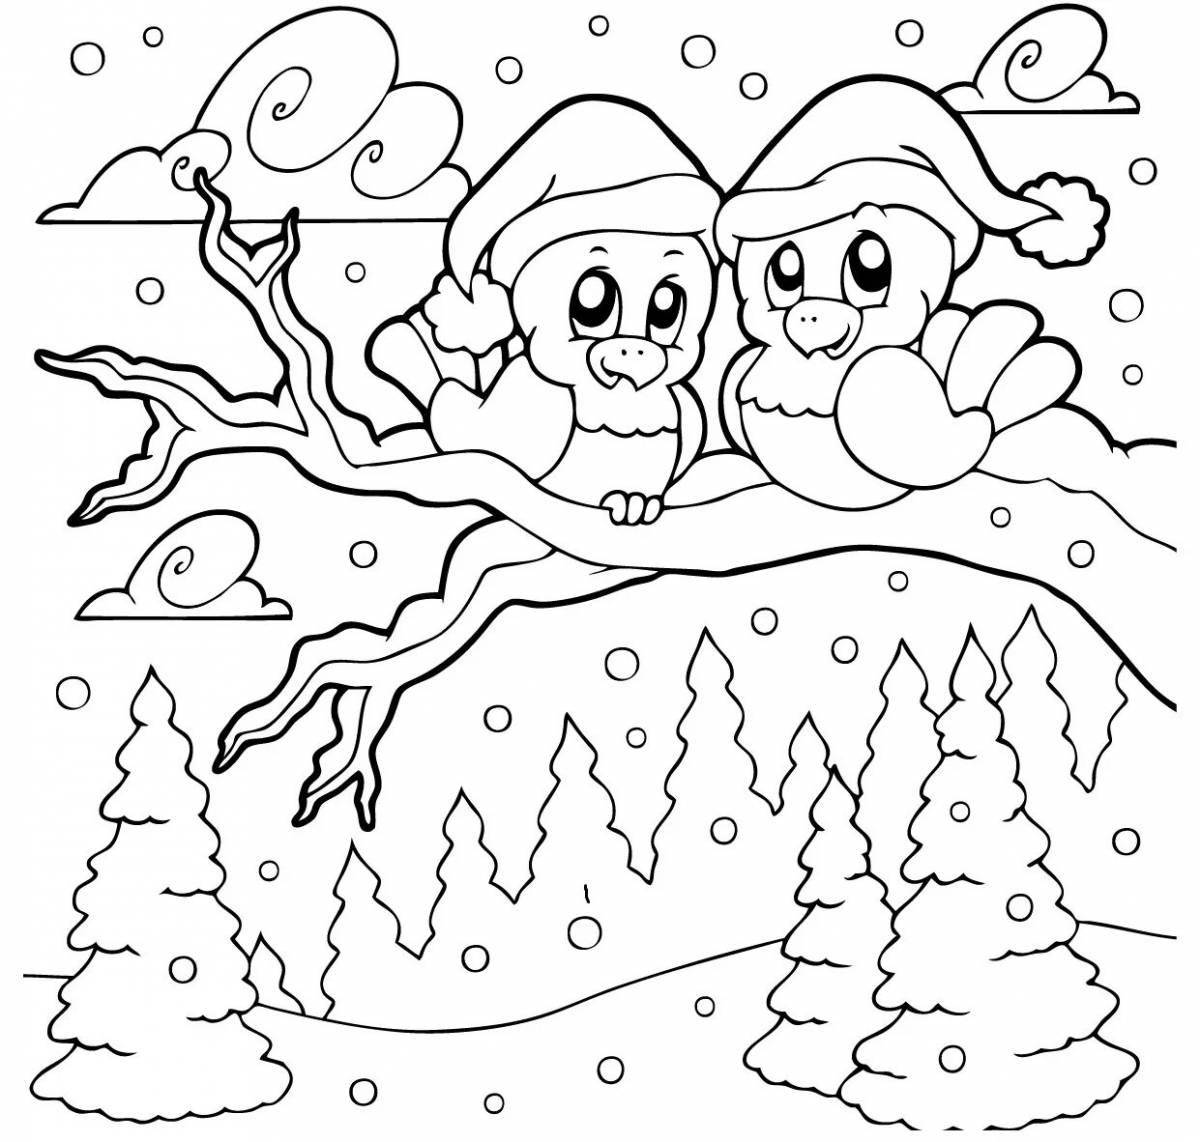 Яркий зимний пейзаж раскраски для детей 6-7 лет